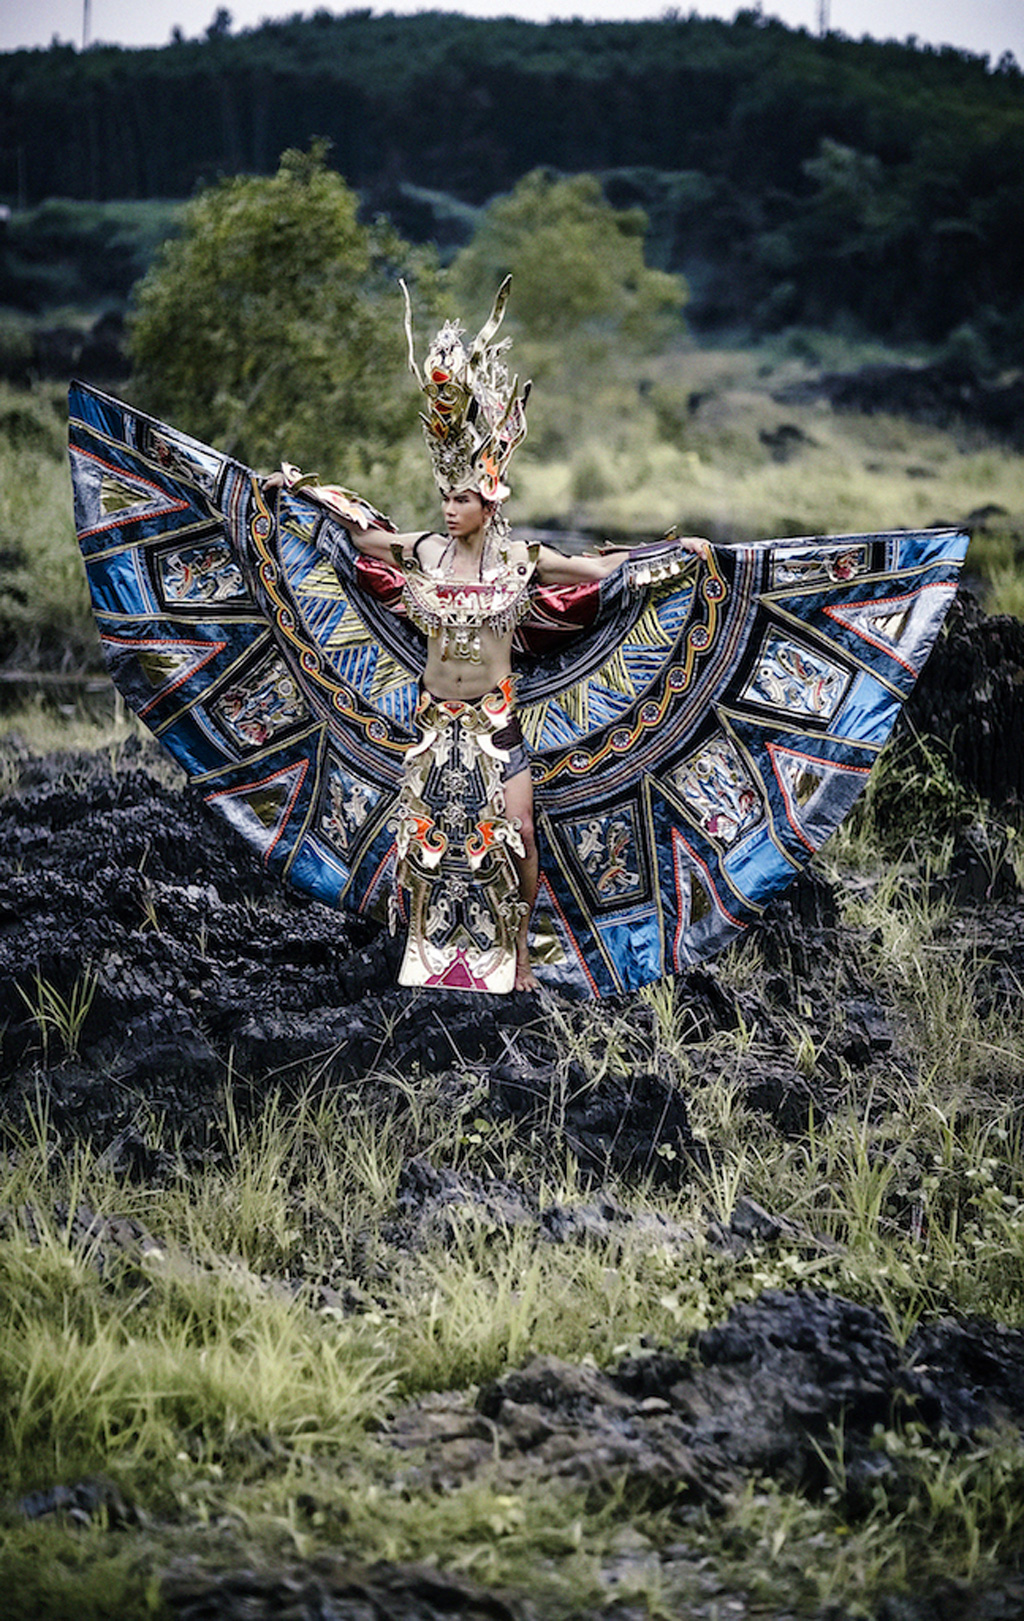 Siêu mẫu Ngọc Tình oai dũng trong trang phục dân tộc dự thi Nam vương Đại sứ Hoàn vũ 3